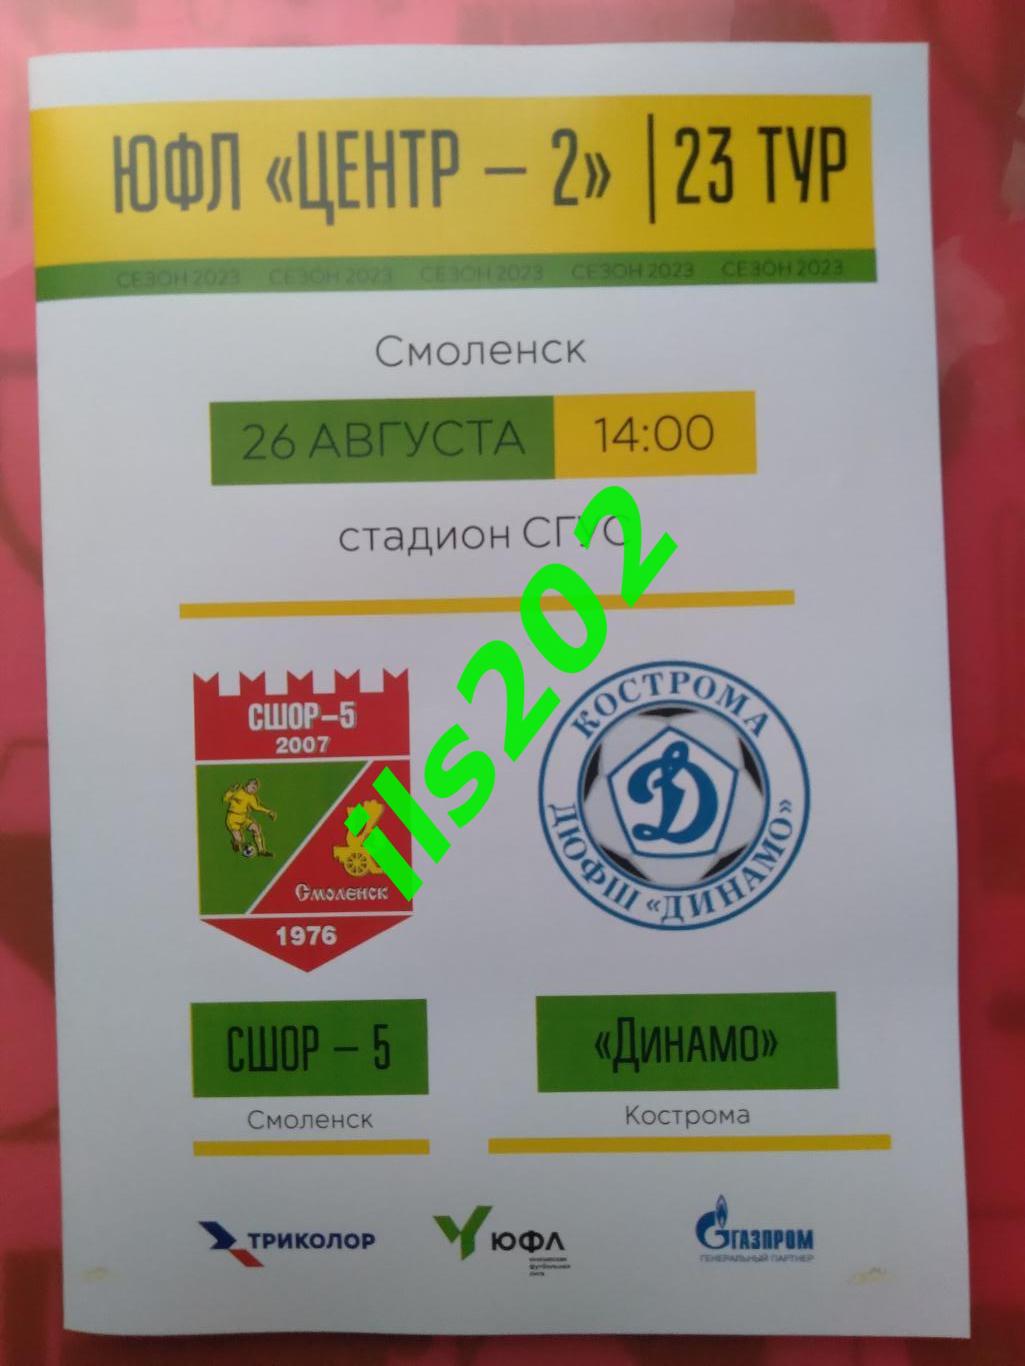 ЮФЛ Центр-2 СШОР-5 Смоленск - Динамо Кострома 2023 официальная